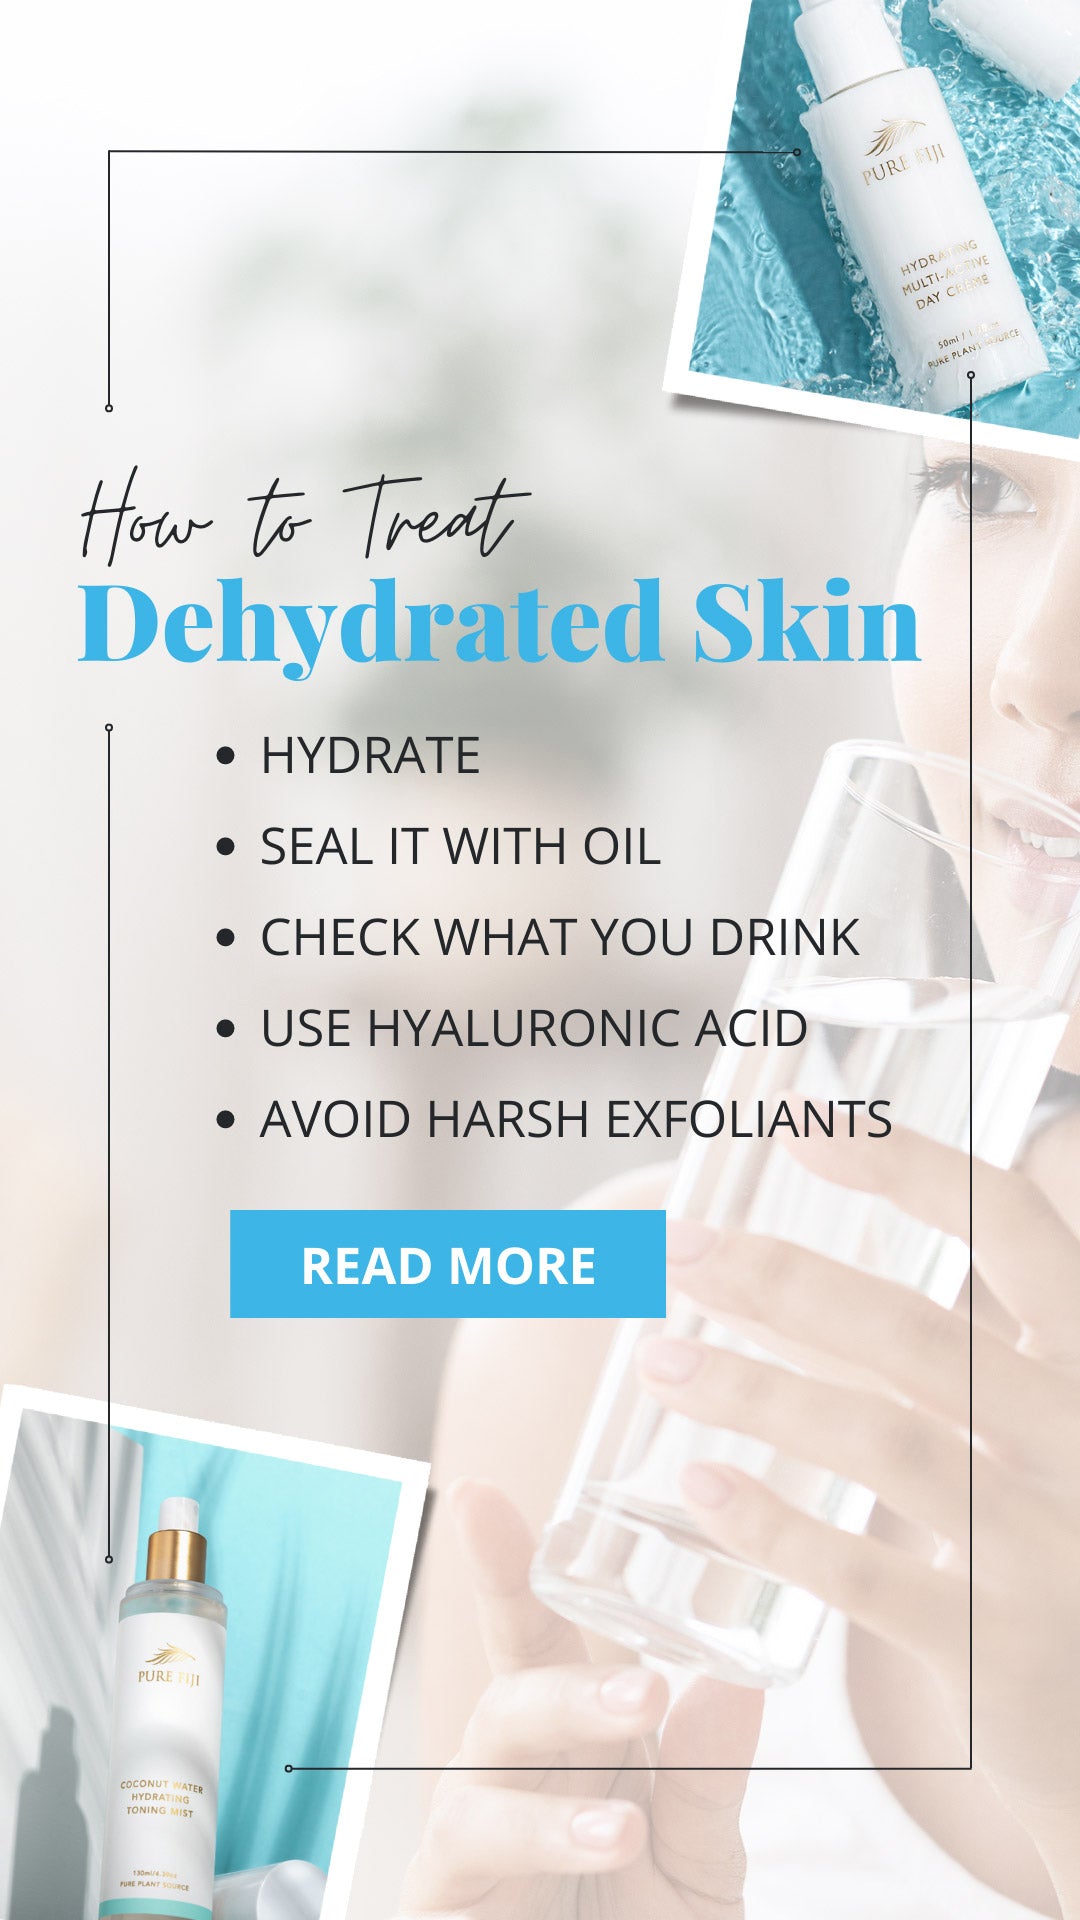 Dehydrated Skin